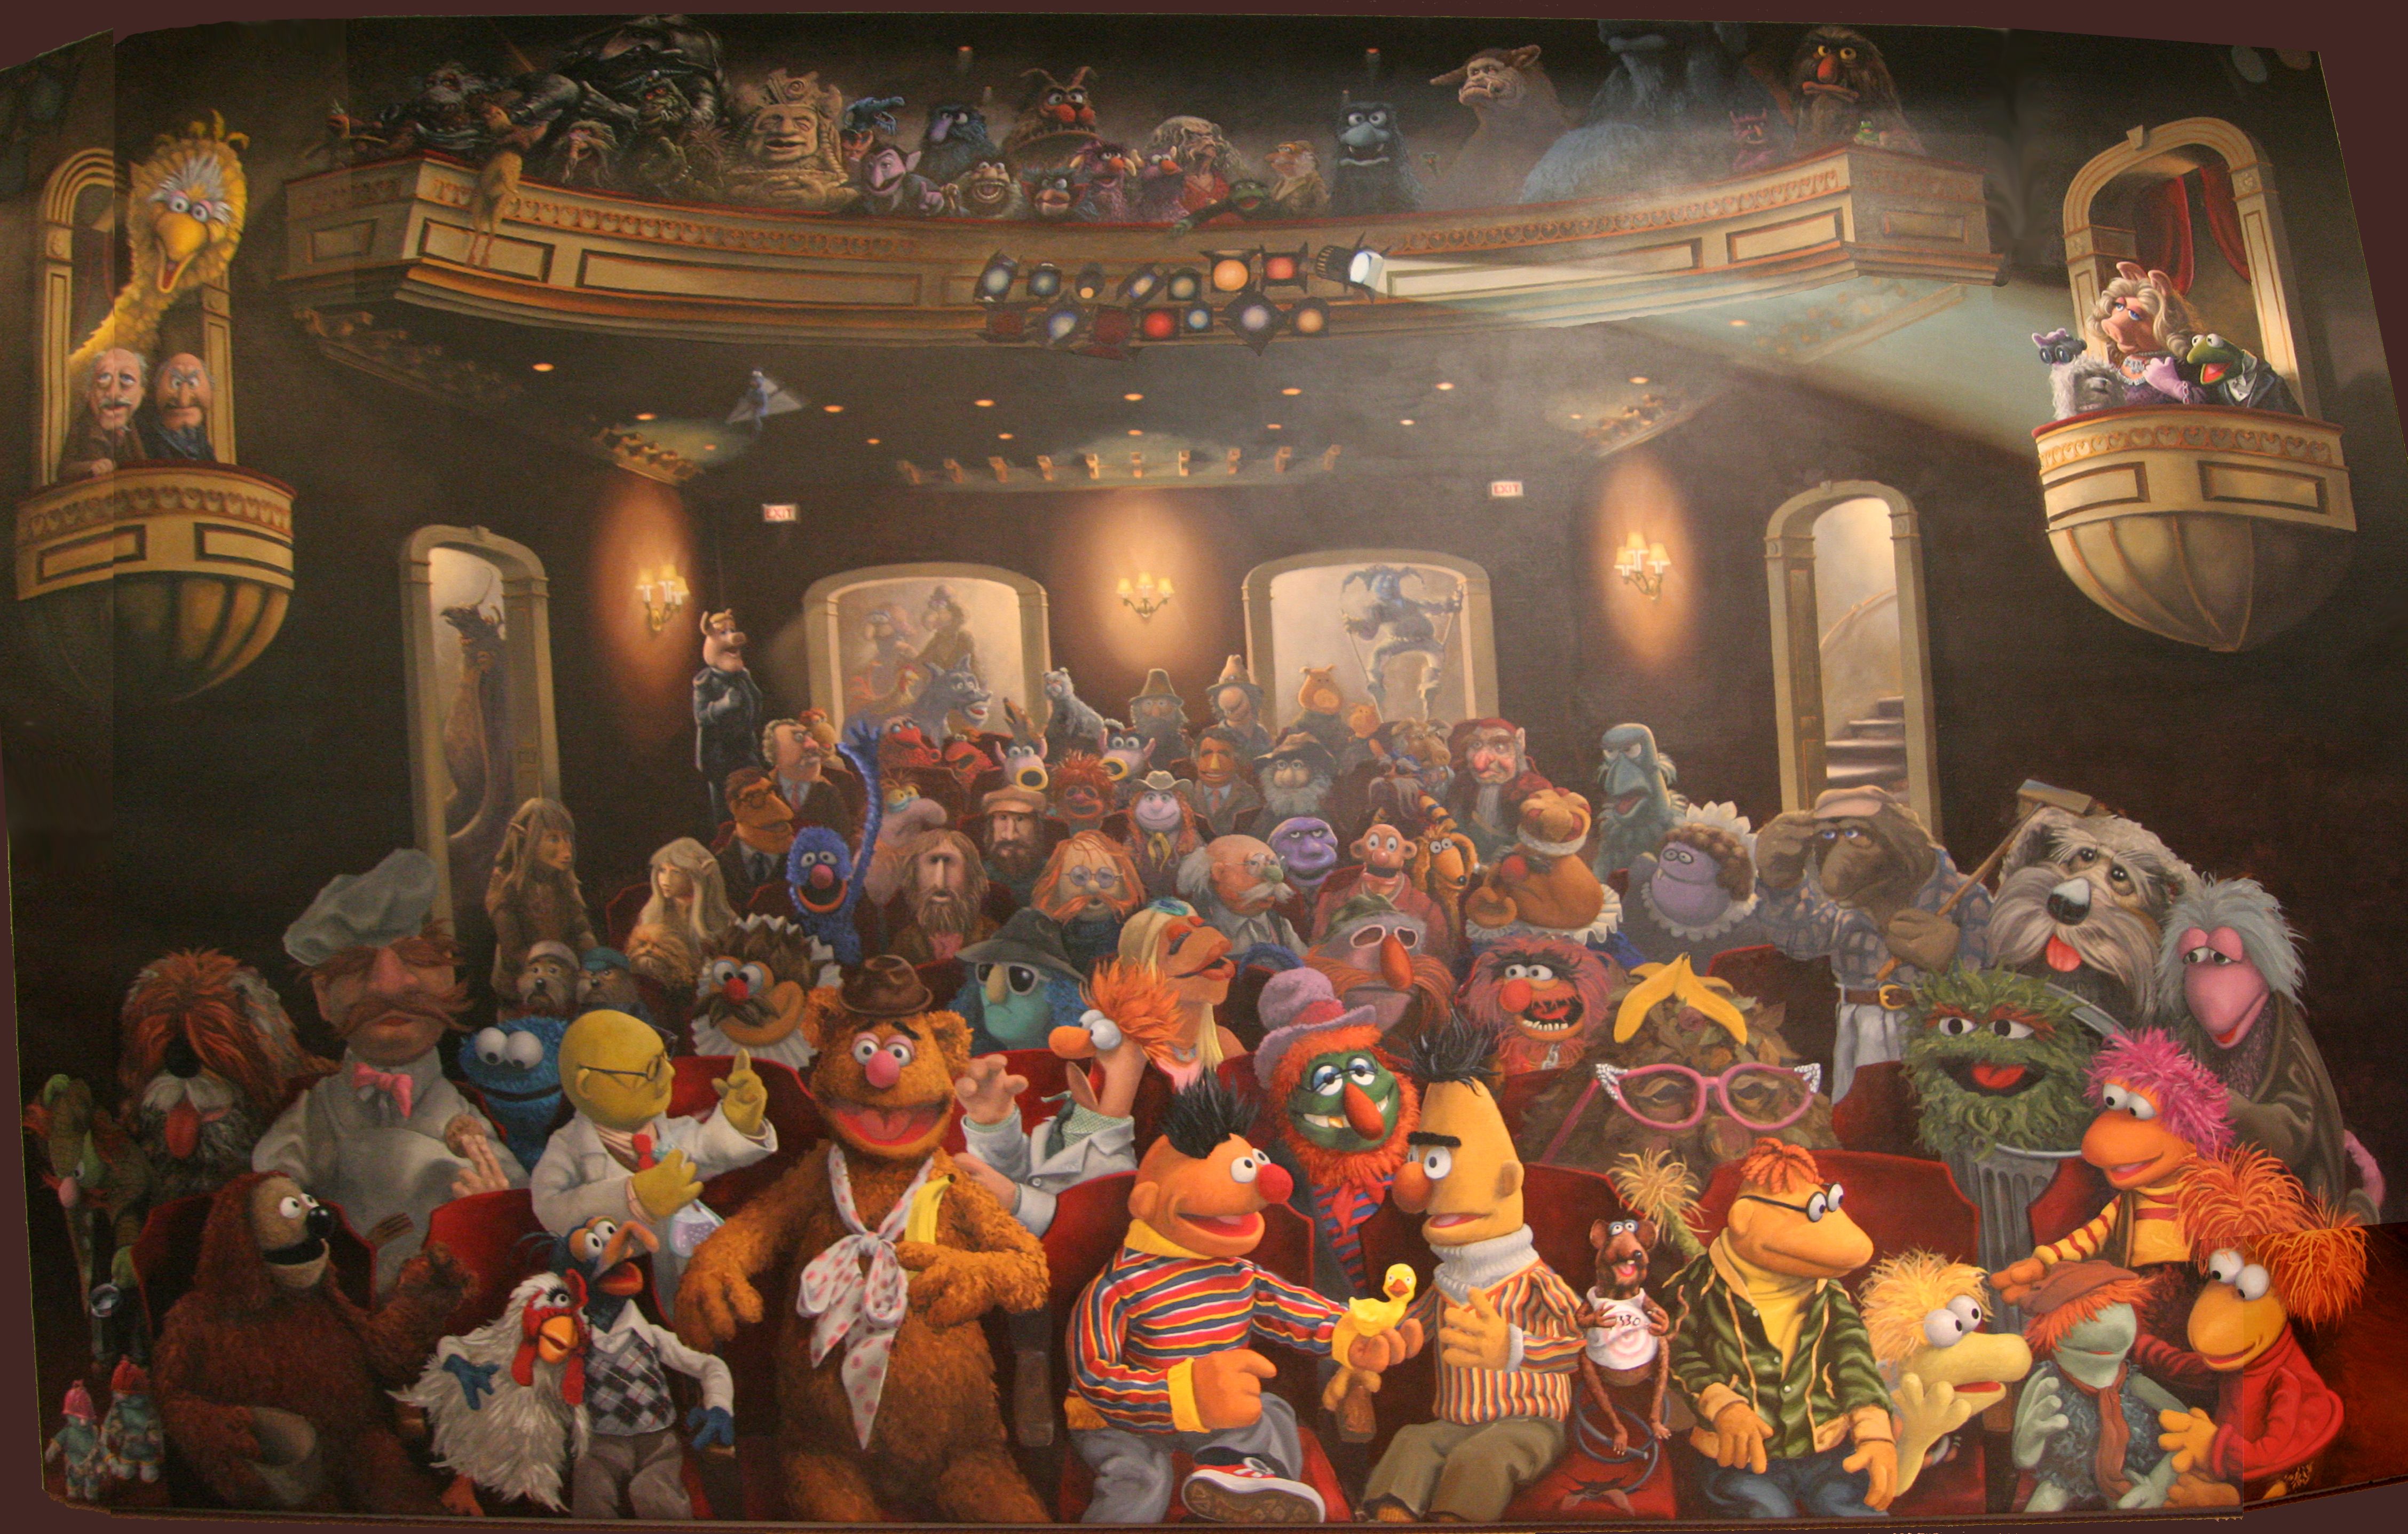 the muppet show 4k Ultra HD Wallpaper